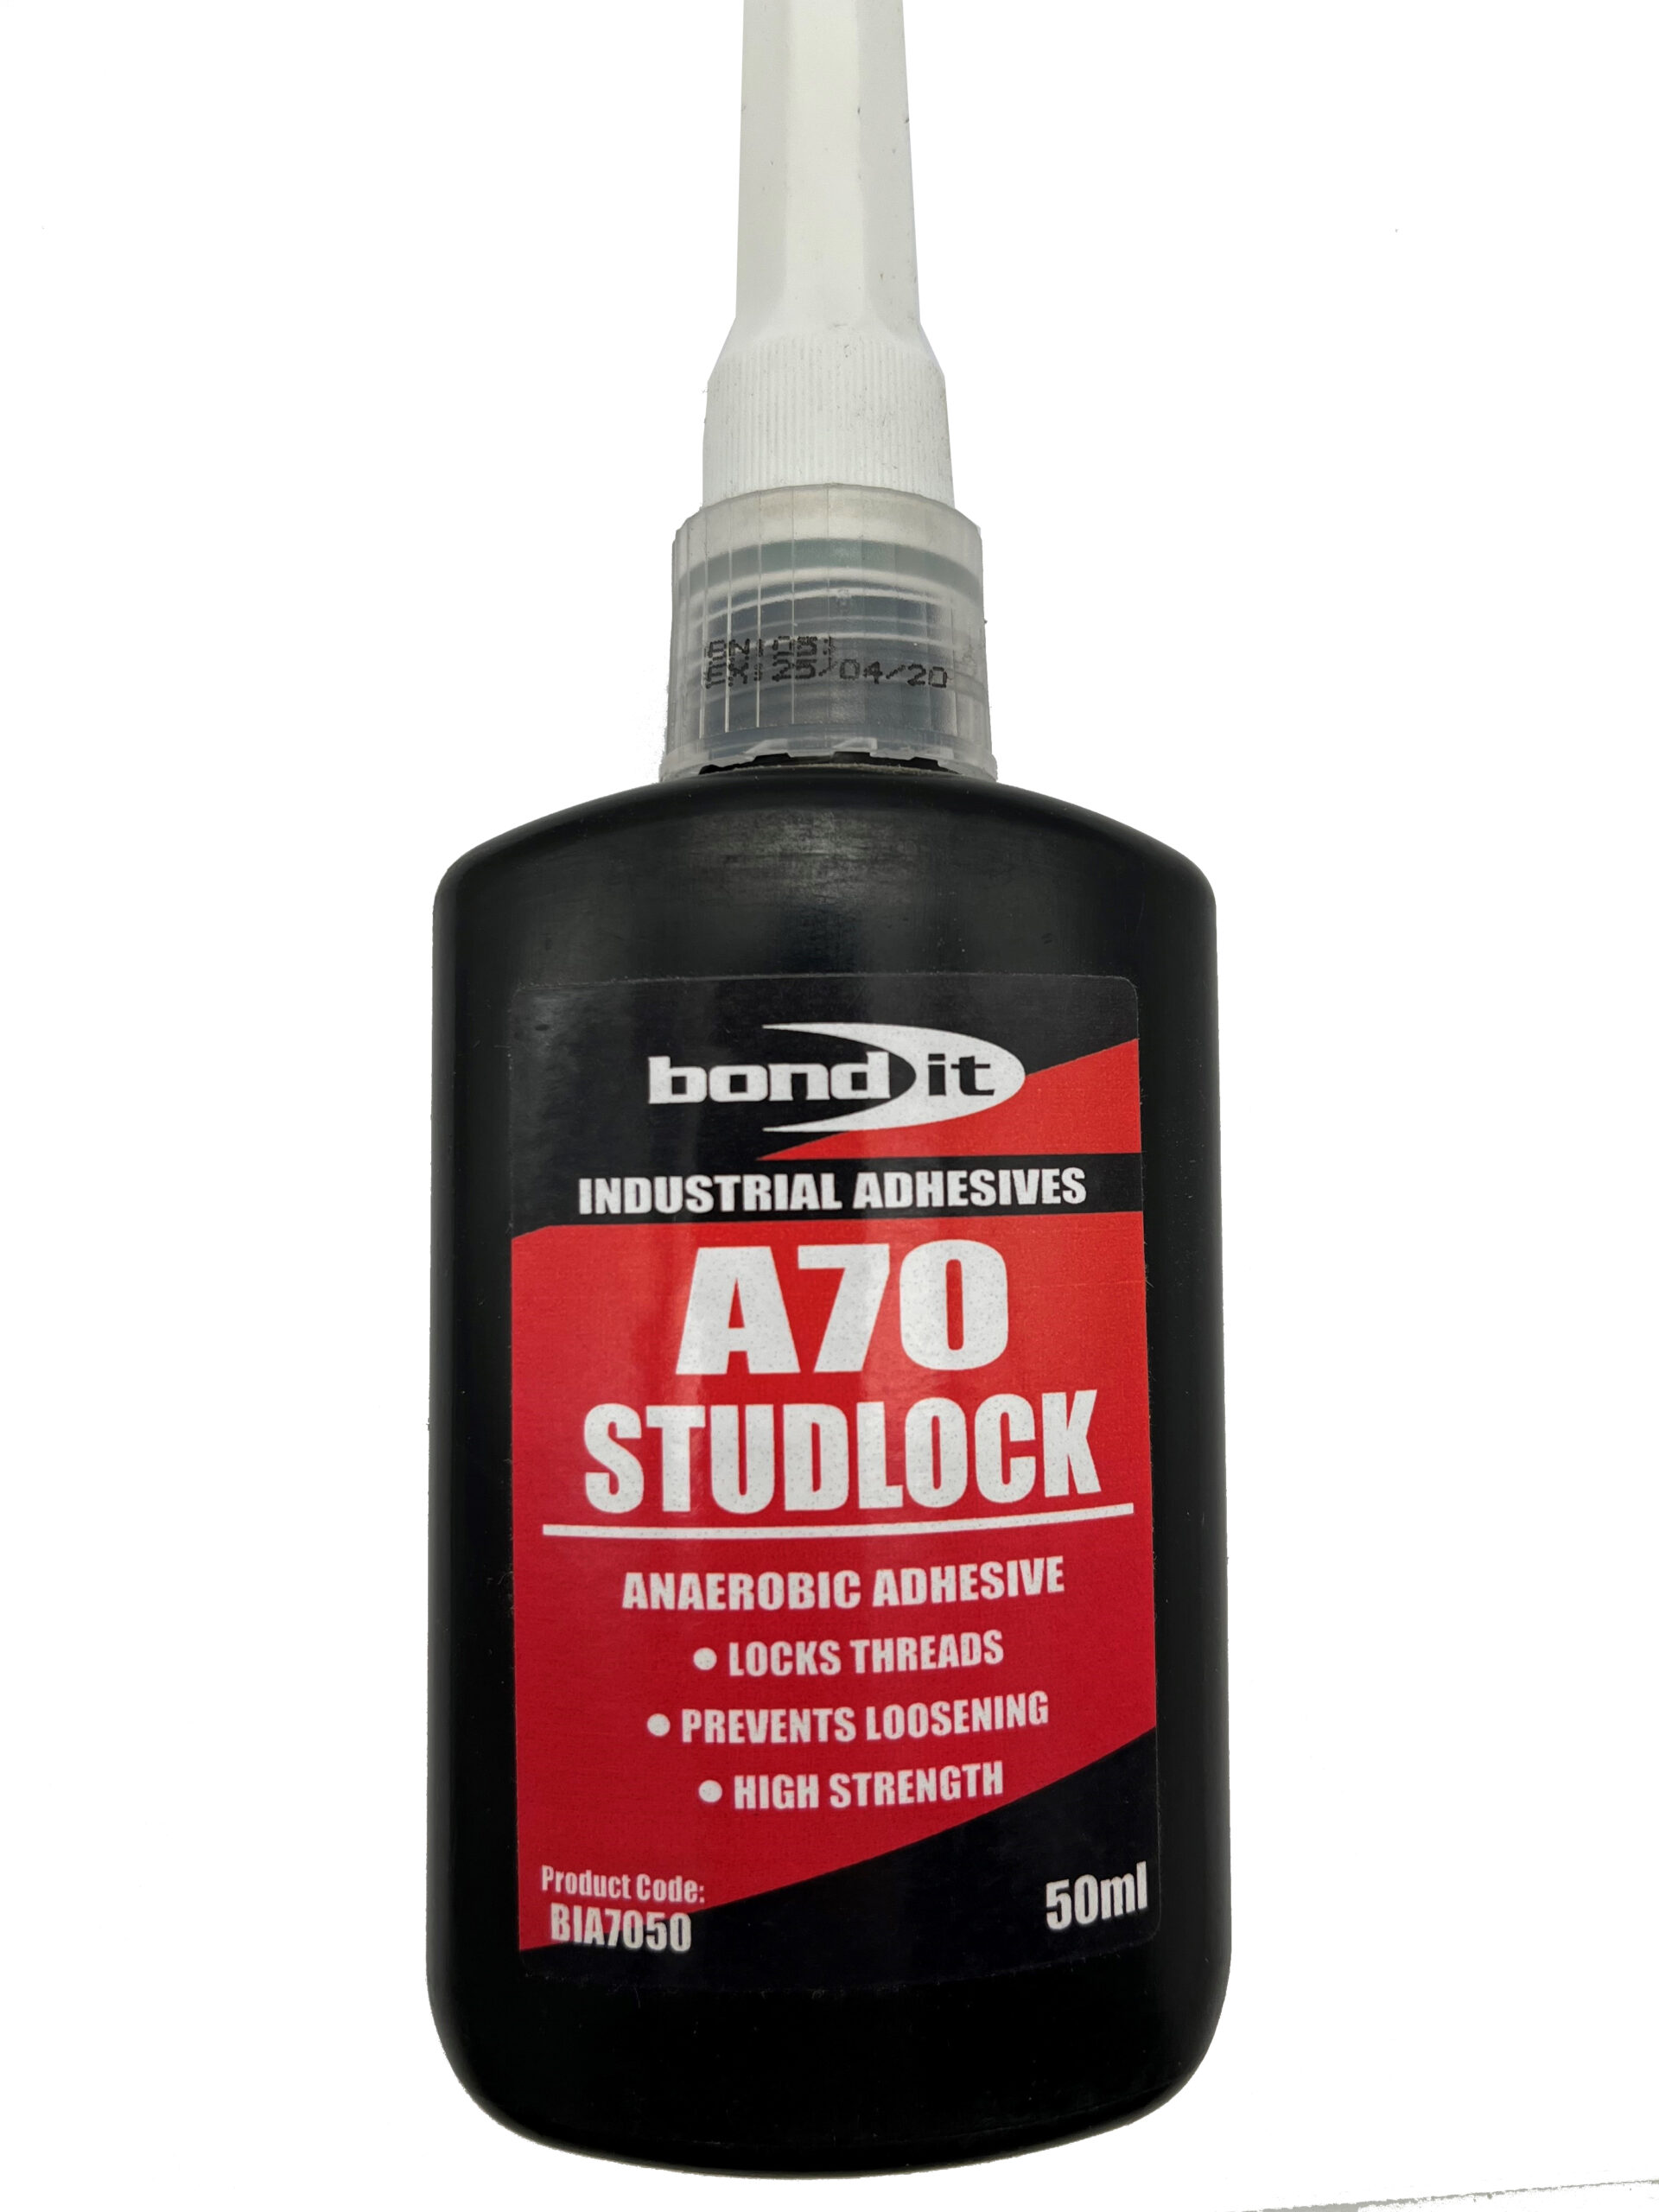 A70 Studlock